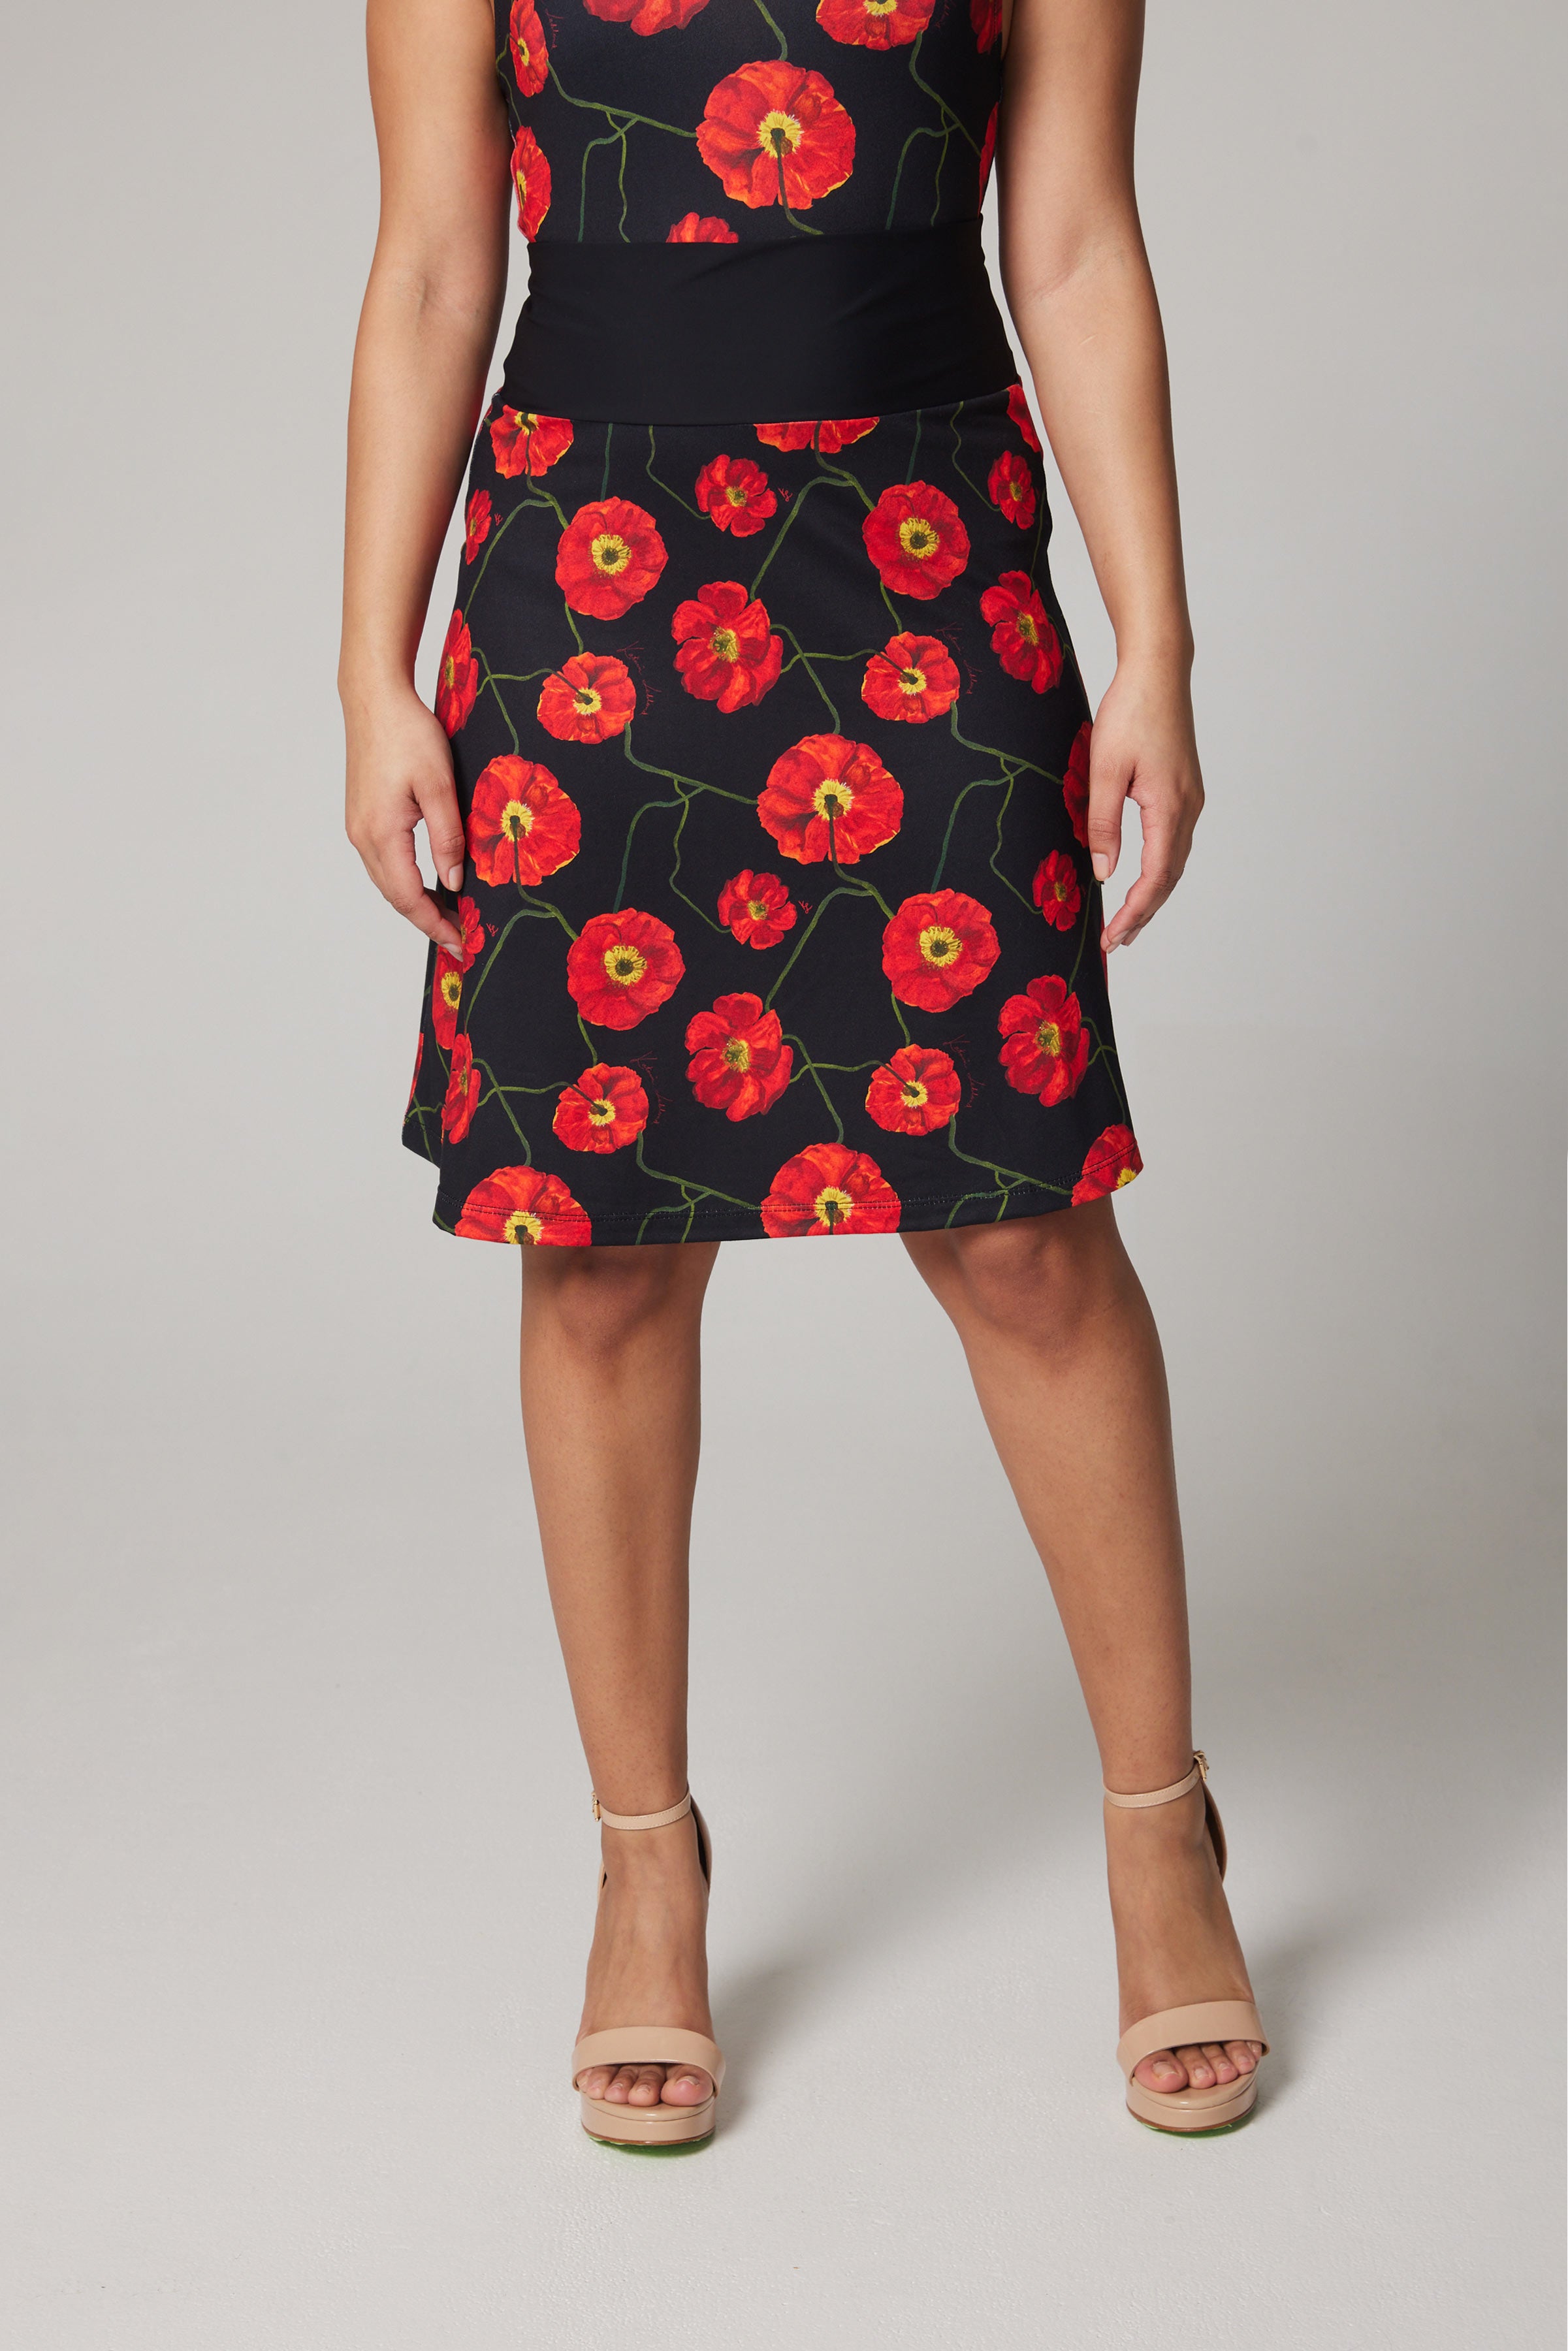 Art Skirt – Poppies